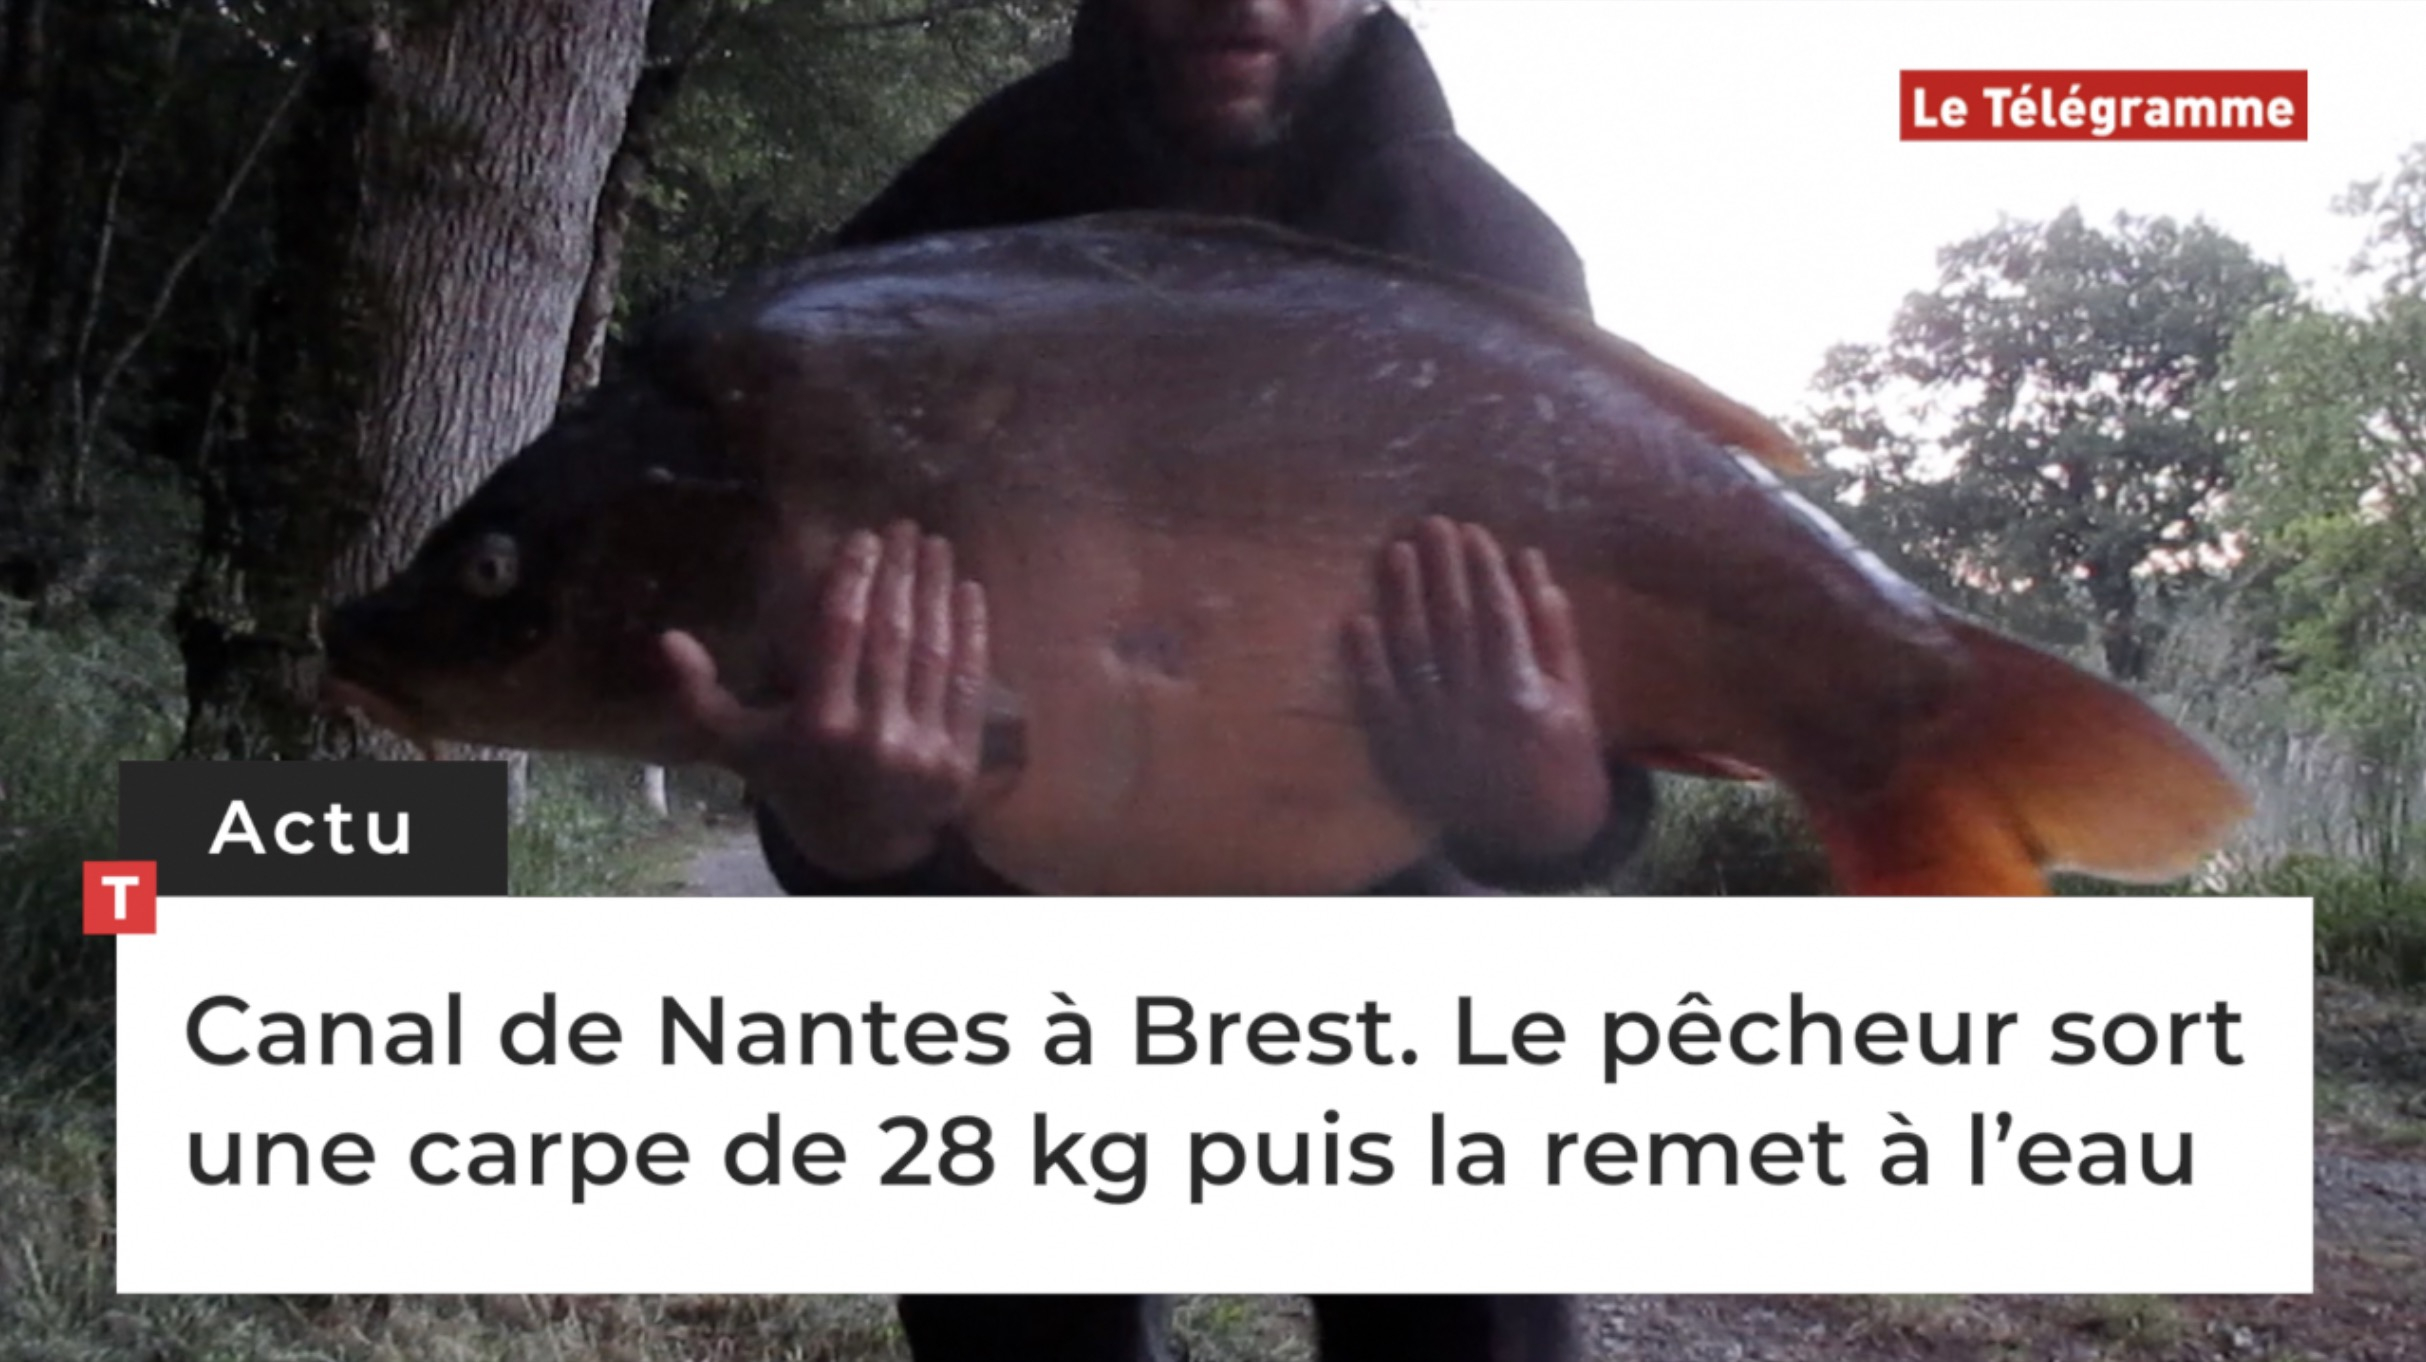 Canal de Nantes à Brest. Le pêcheur sort une carpe de 28 kg puis la remet à l’eau (Le Télégramme)